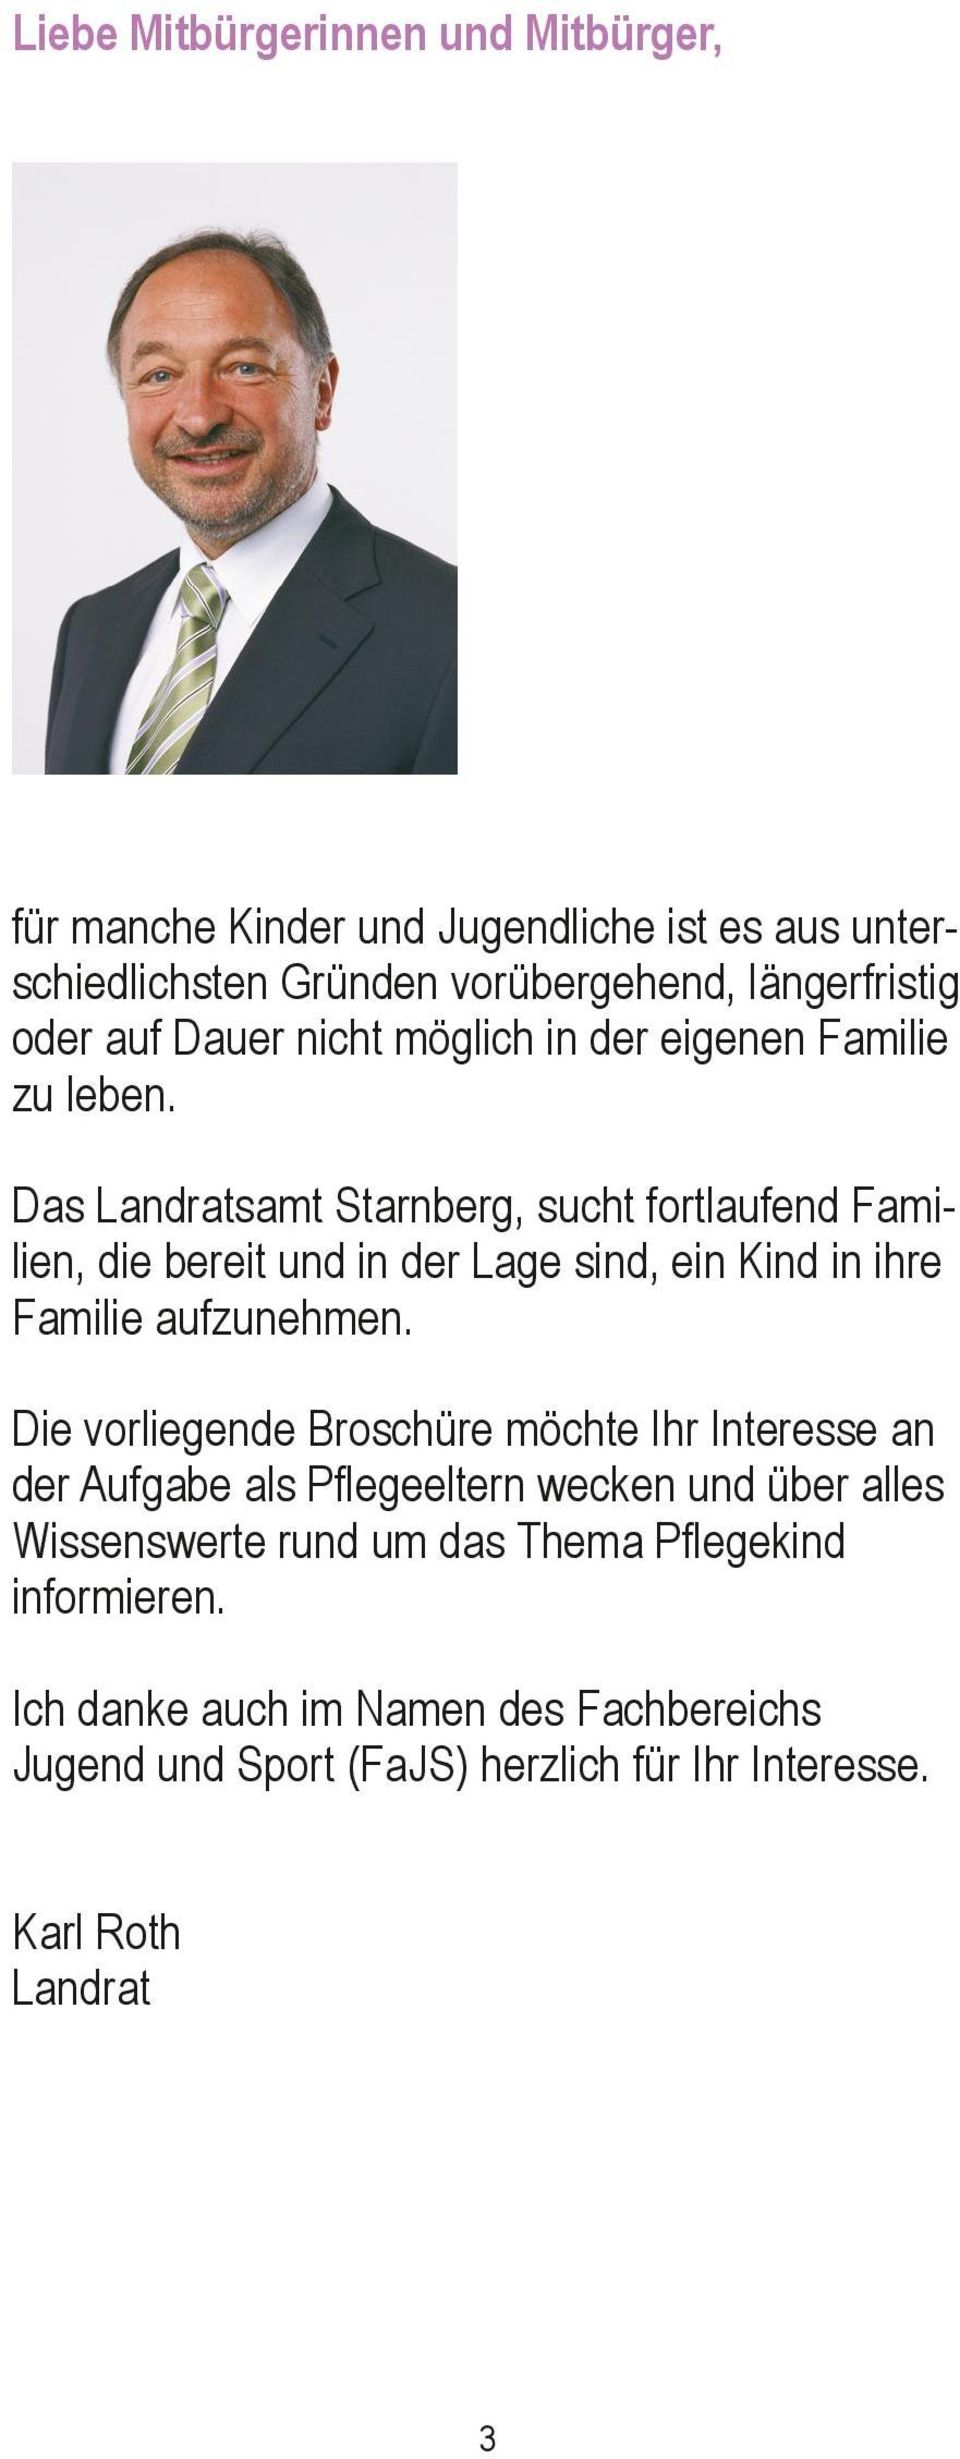 Das Landratsamt Starnberg, sucht fortlaufend Familien, die bereit und in der Lage sind, ein Kind in ihre Familie aufzunehmen.